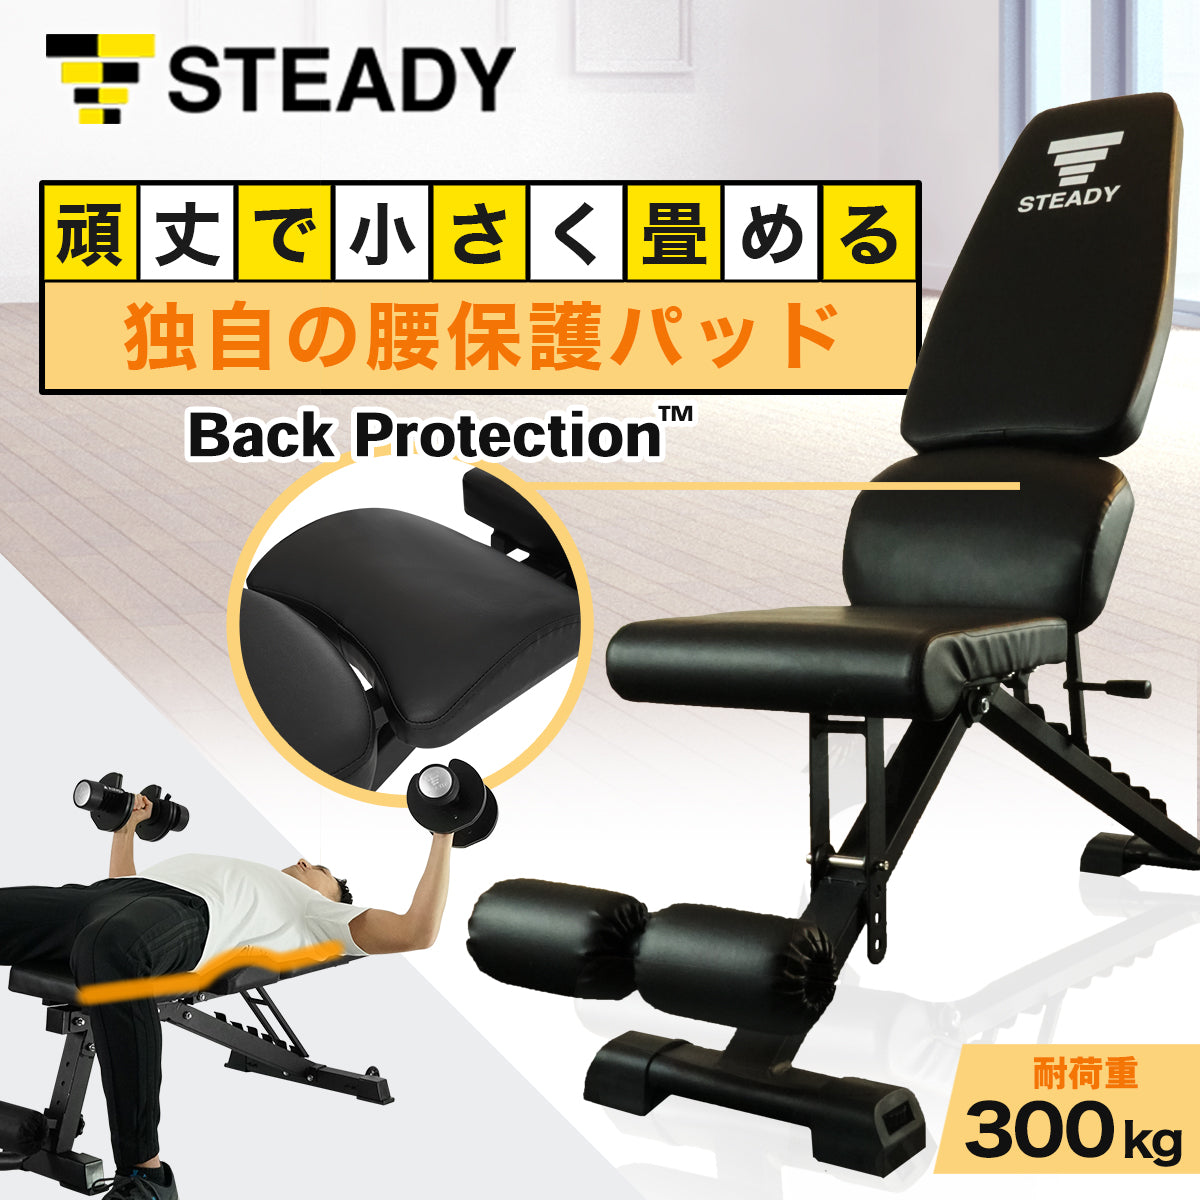 トレーニングベンチ(スタンダードモデル) Back Protection【インク ...